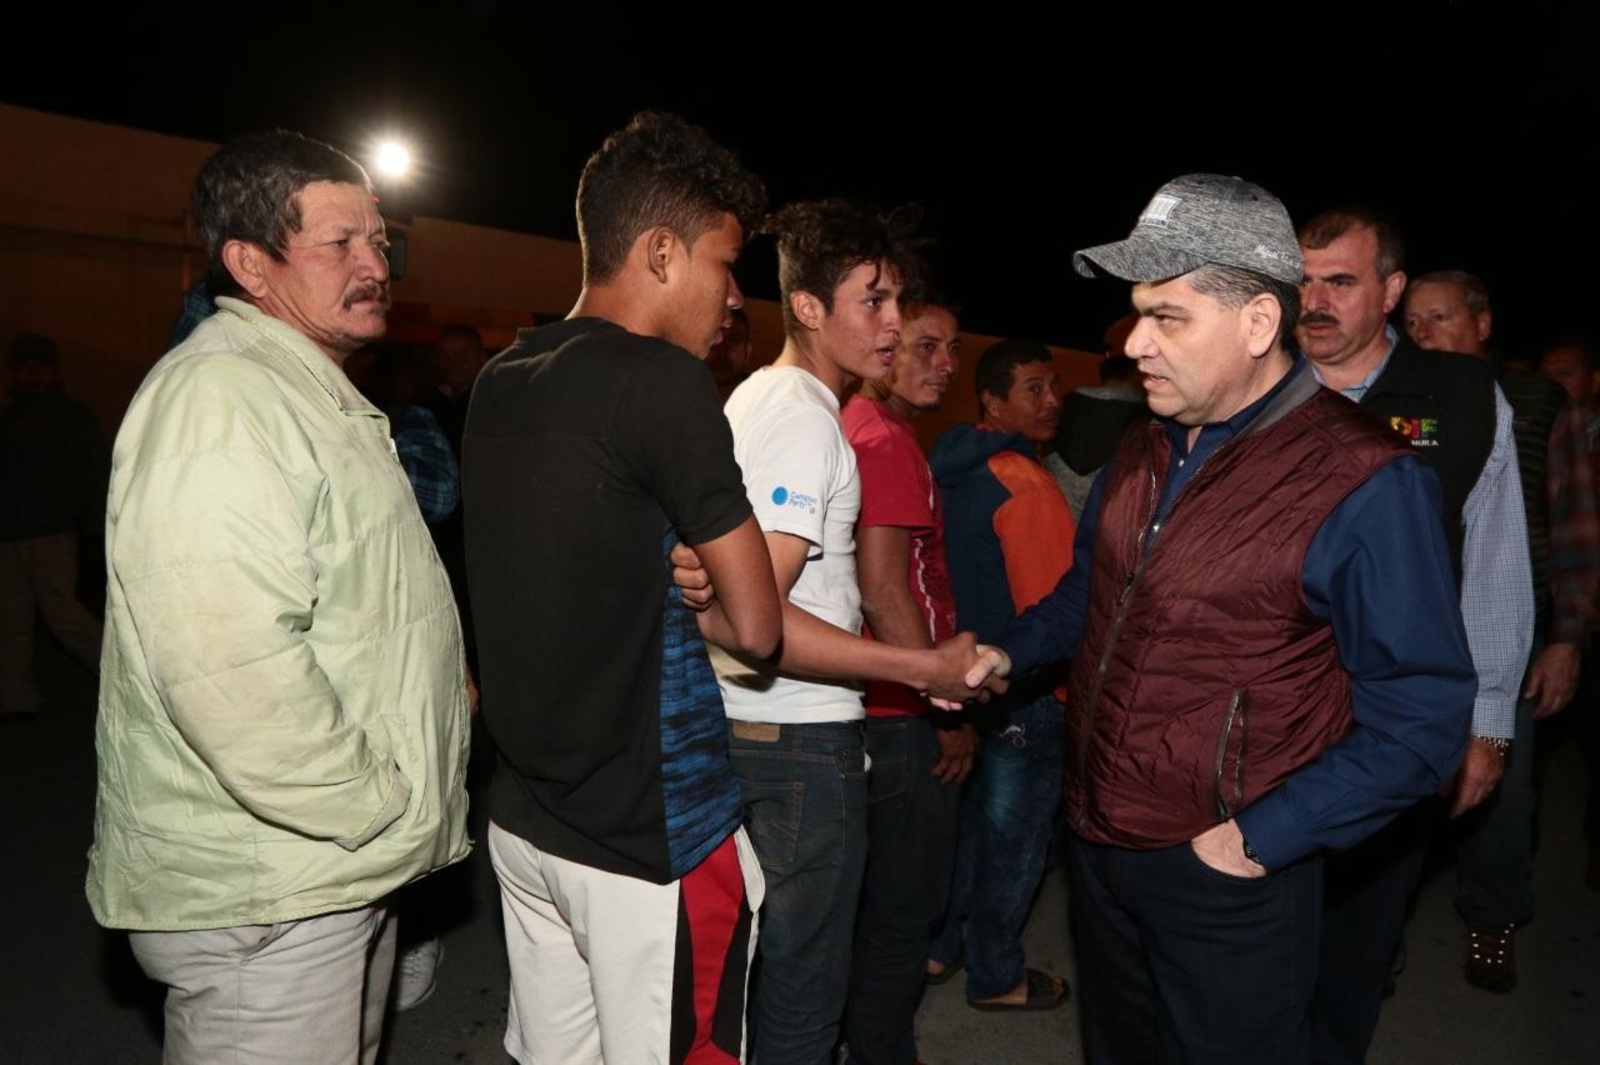 Visita. El gobernador del estado, Miguel Riquelme Solís, visitó a los migrantes y les ofreció su apoyo.